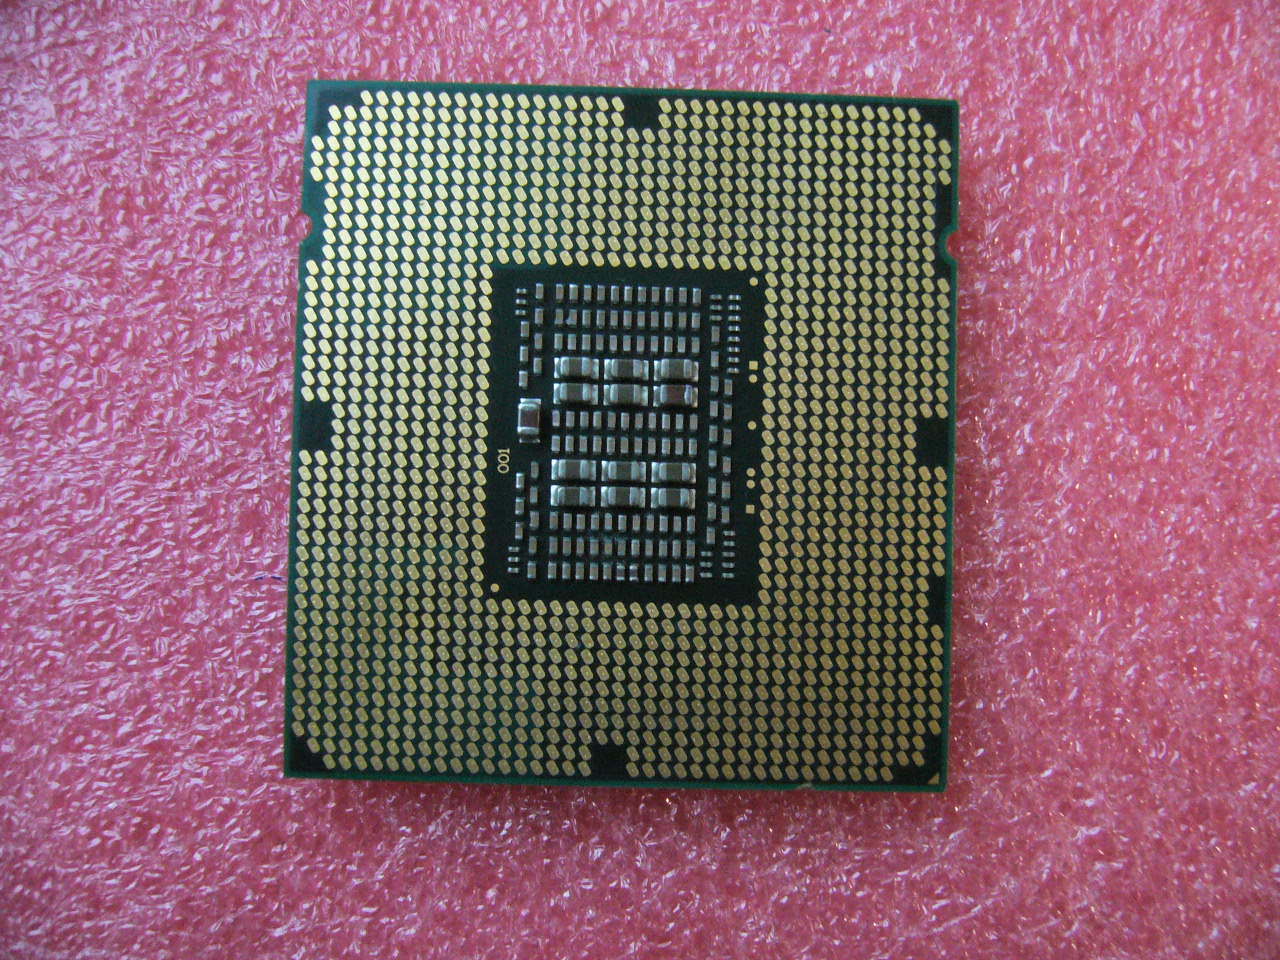 QTY 1x Intel CPU E5-2428L CPU 6-Cores 1.8Ghz LGA1356 SR0M3 TDP 60W - zum Schließen ins Bild klicken